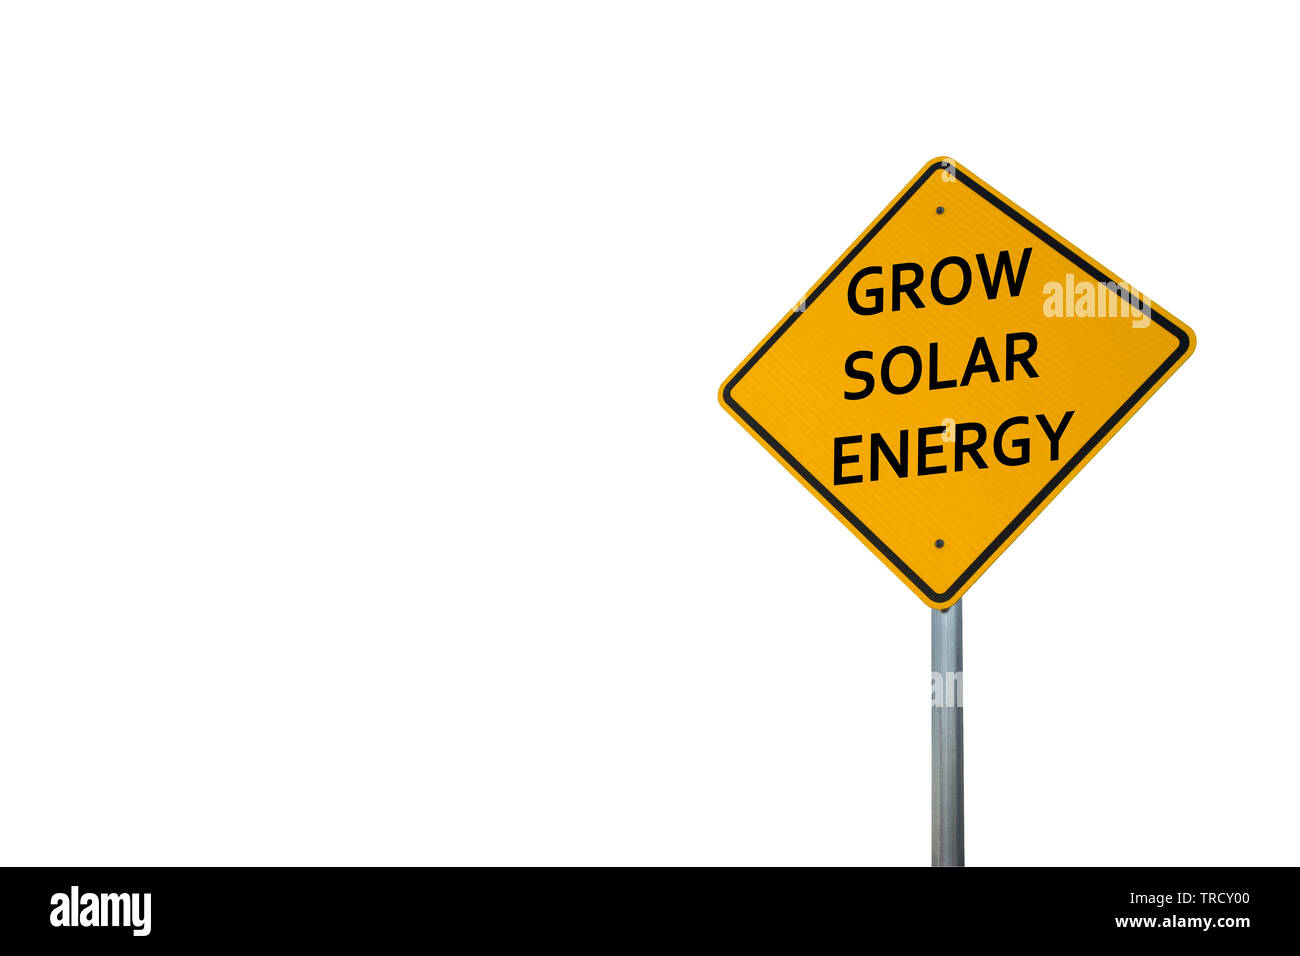 Grow Solar Energy Stock Photo